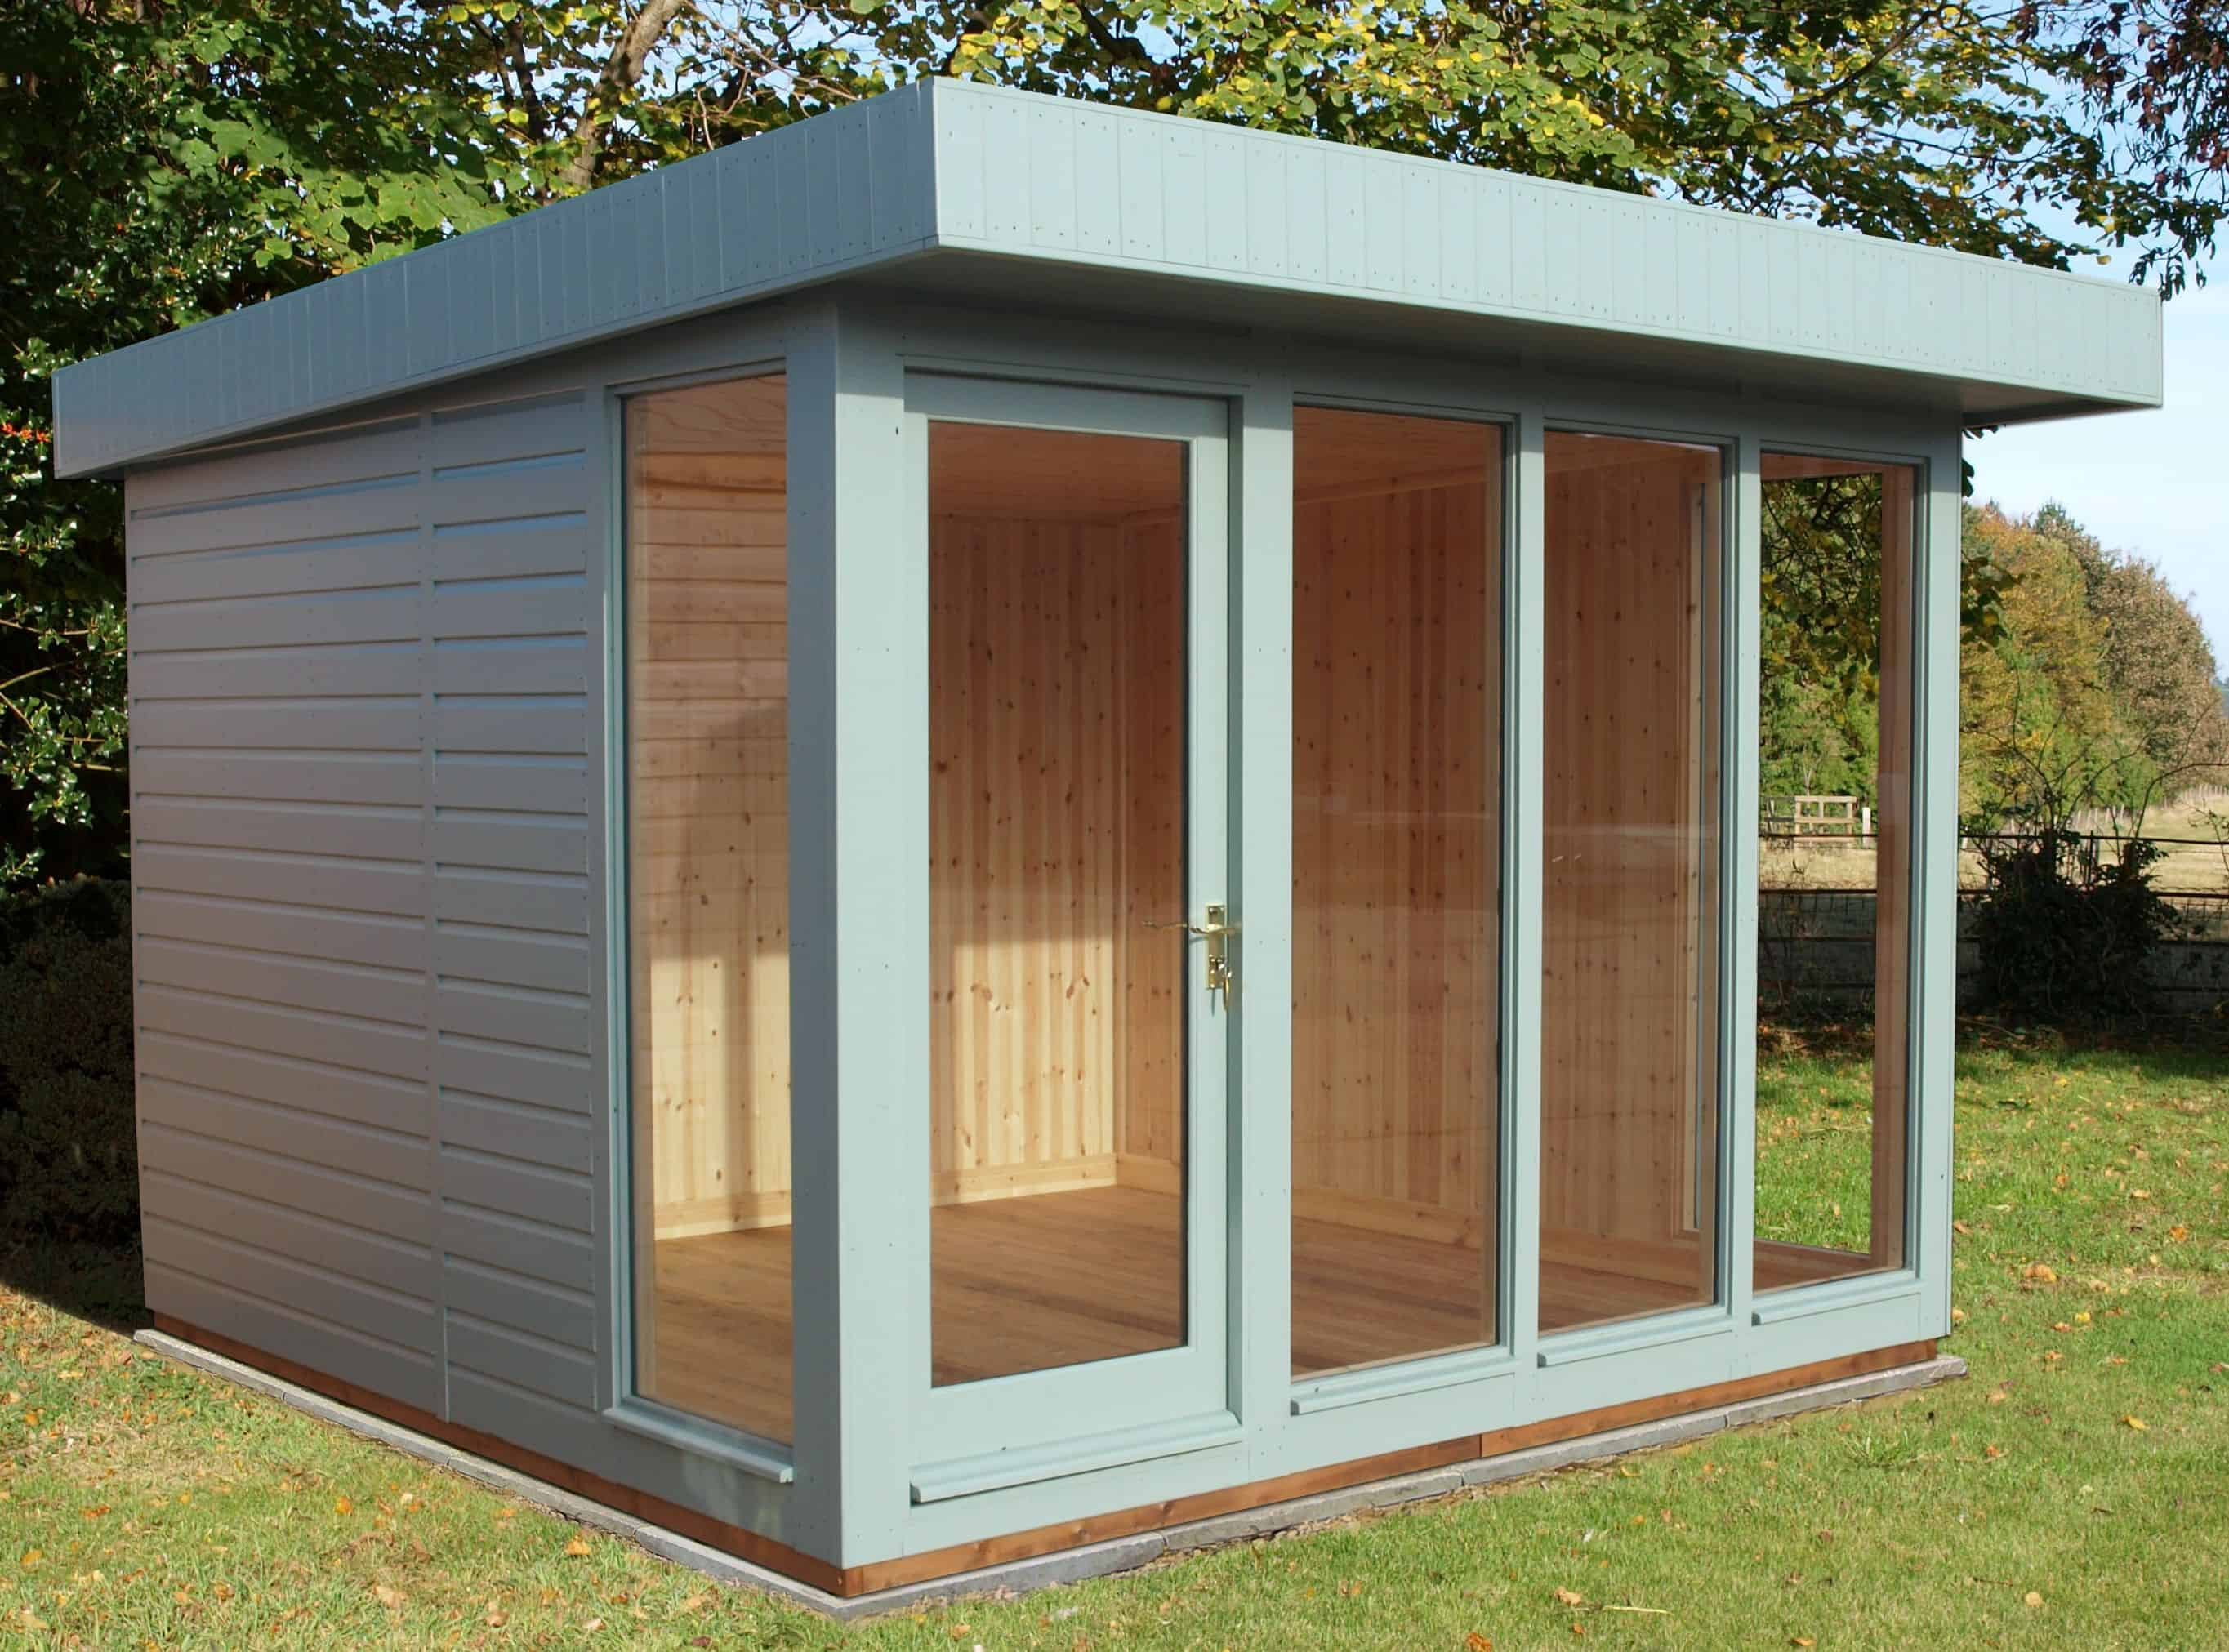 16.SIMPHOME.COM backyard shed designs contemporary garden sheds